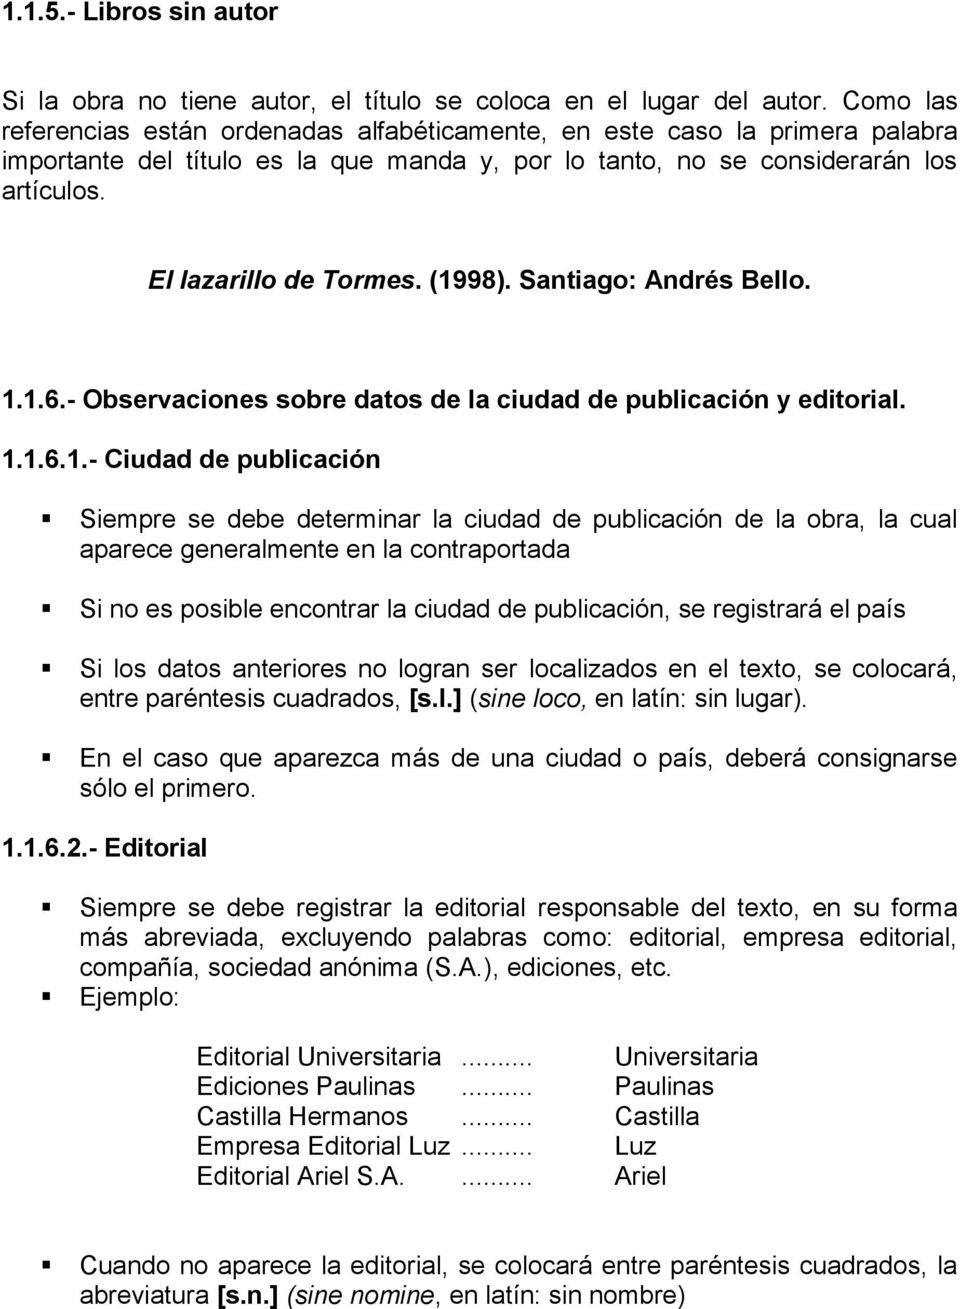 (1998). Santiago: Andrés Bello. 1.1.6.- Observaciones sobre datos de la ciudad de publicación y editorial. 1.1.6.1.- Ciudad de publicación Siempre se debe determinar la ciudad de publicación de la